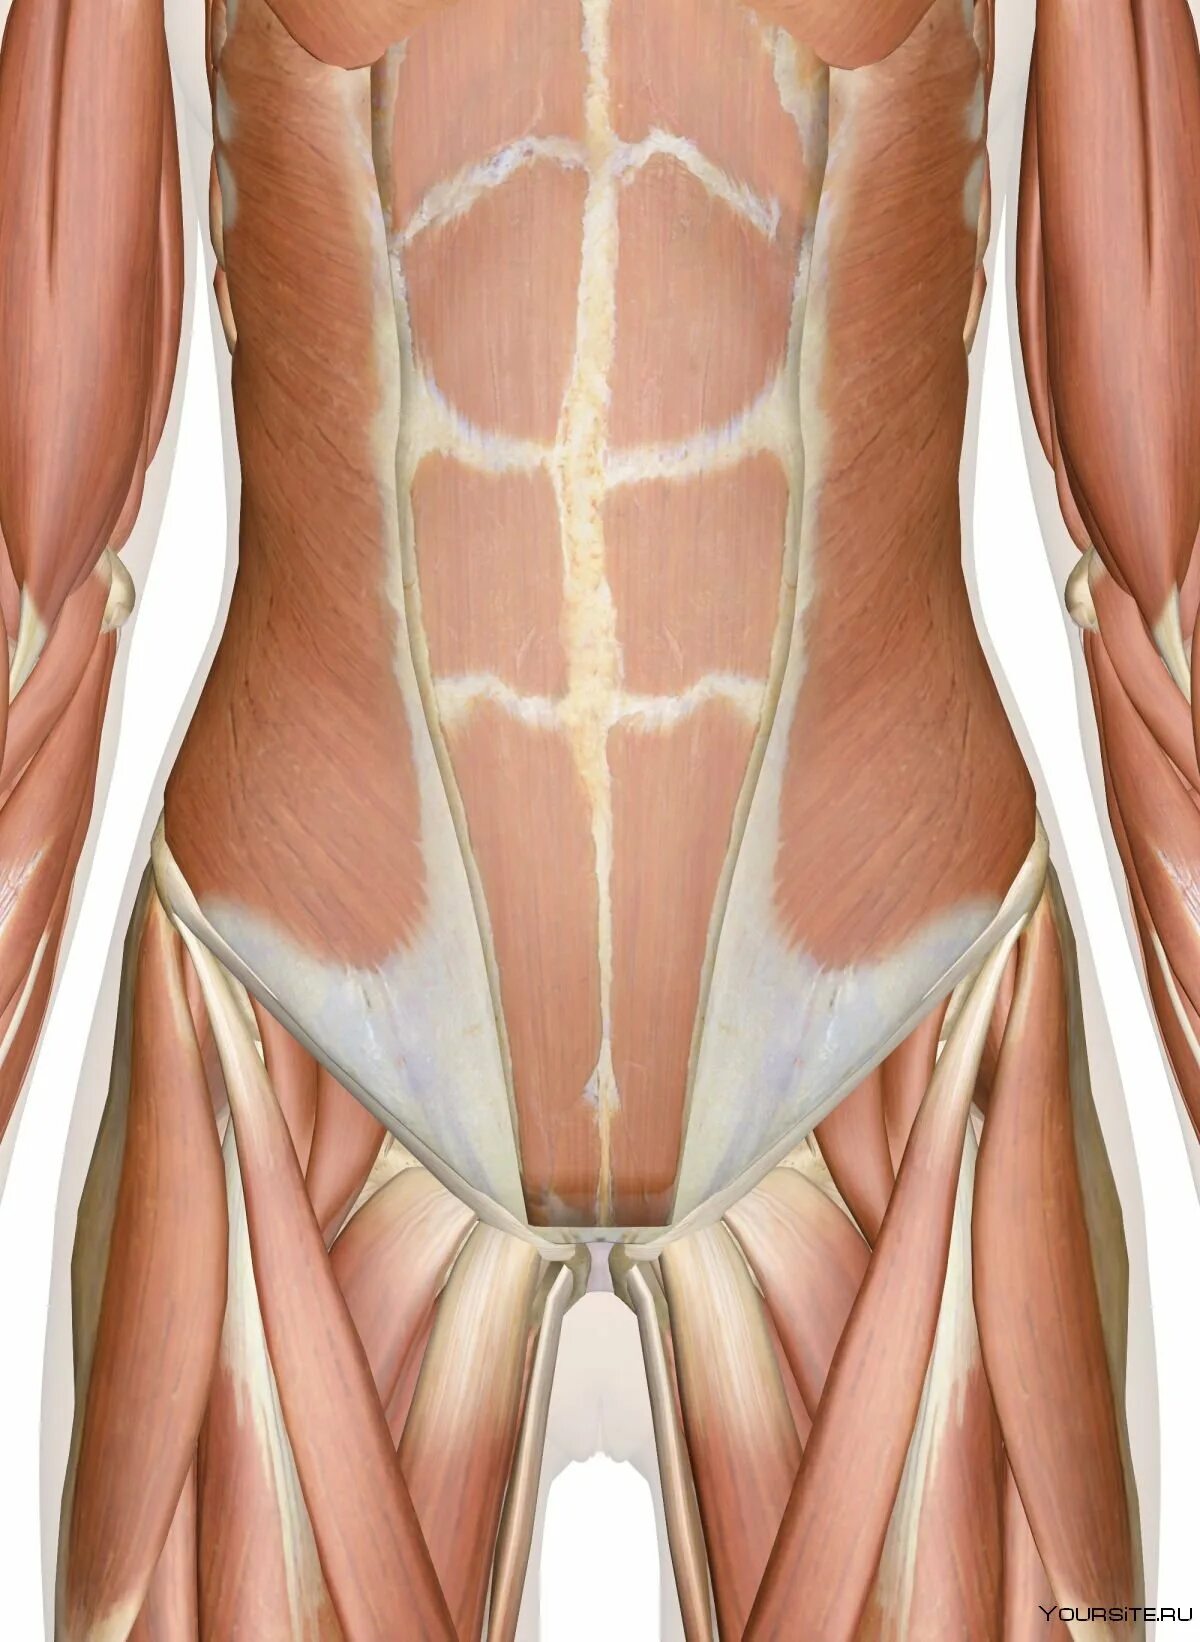 Прямая мышца живота у женщин. Мышцы живота. Строение мышц живота у женщин. Мышцы пресса анатомия женщины. Мышцы живота у женщин анатомия.